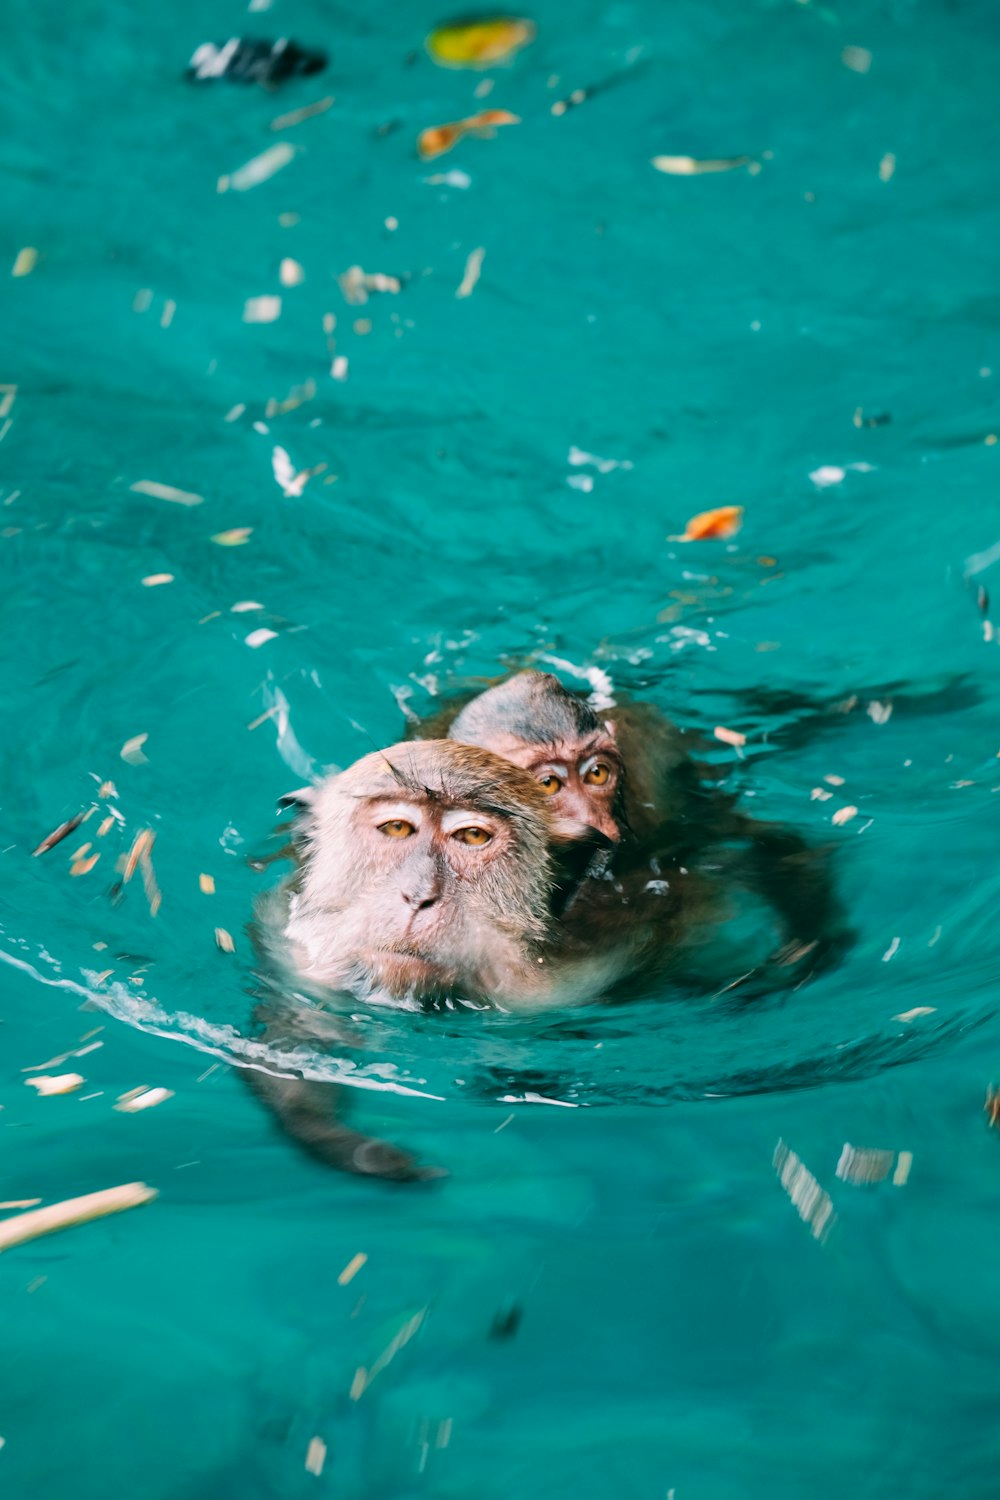 two monkeys swimming in water